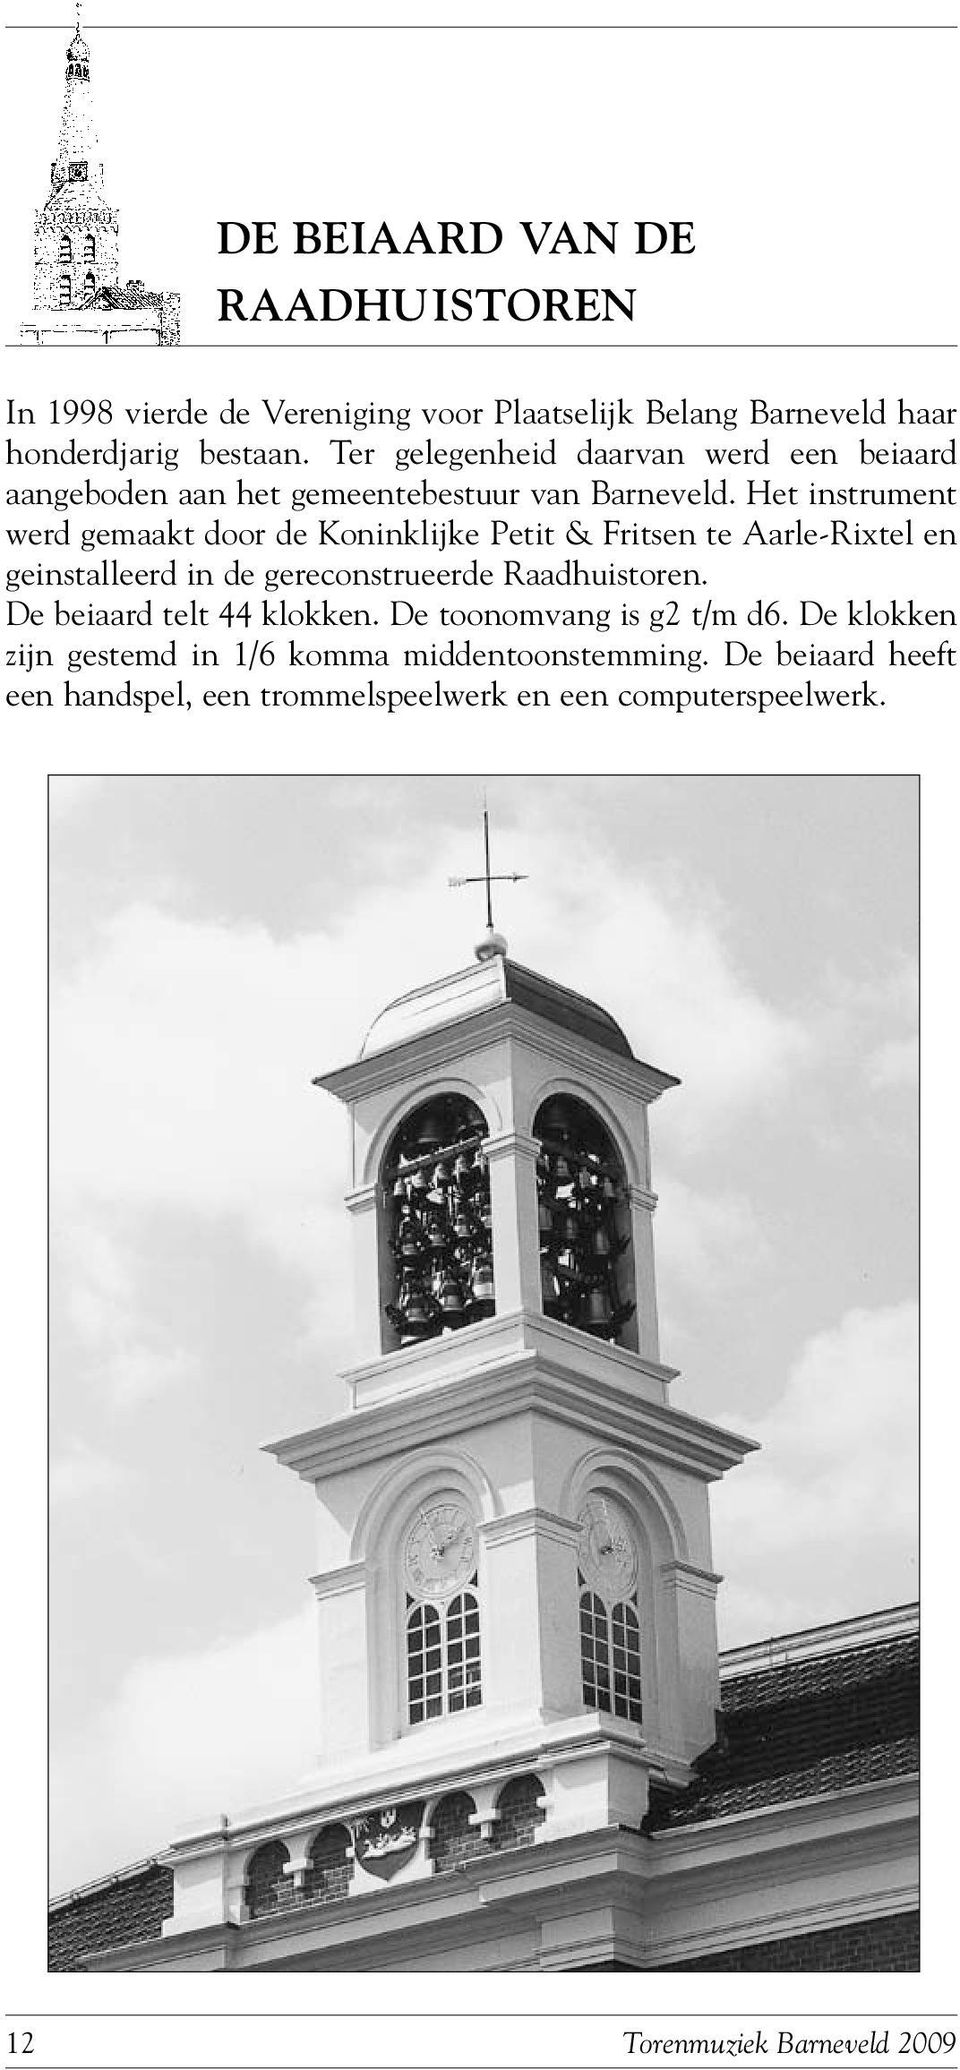 Het instrument werd gemaakt door de Koninklijke Petit & Fritsen te Aarle-Rixtel en geinstalleerd in de gereconstrueerde Raadhuistoren.